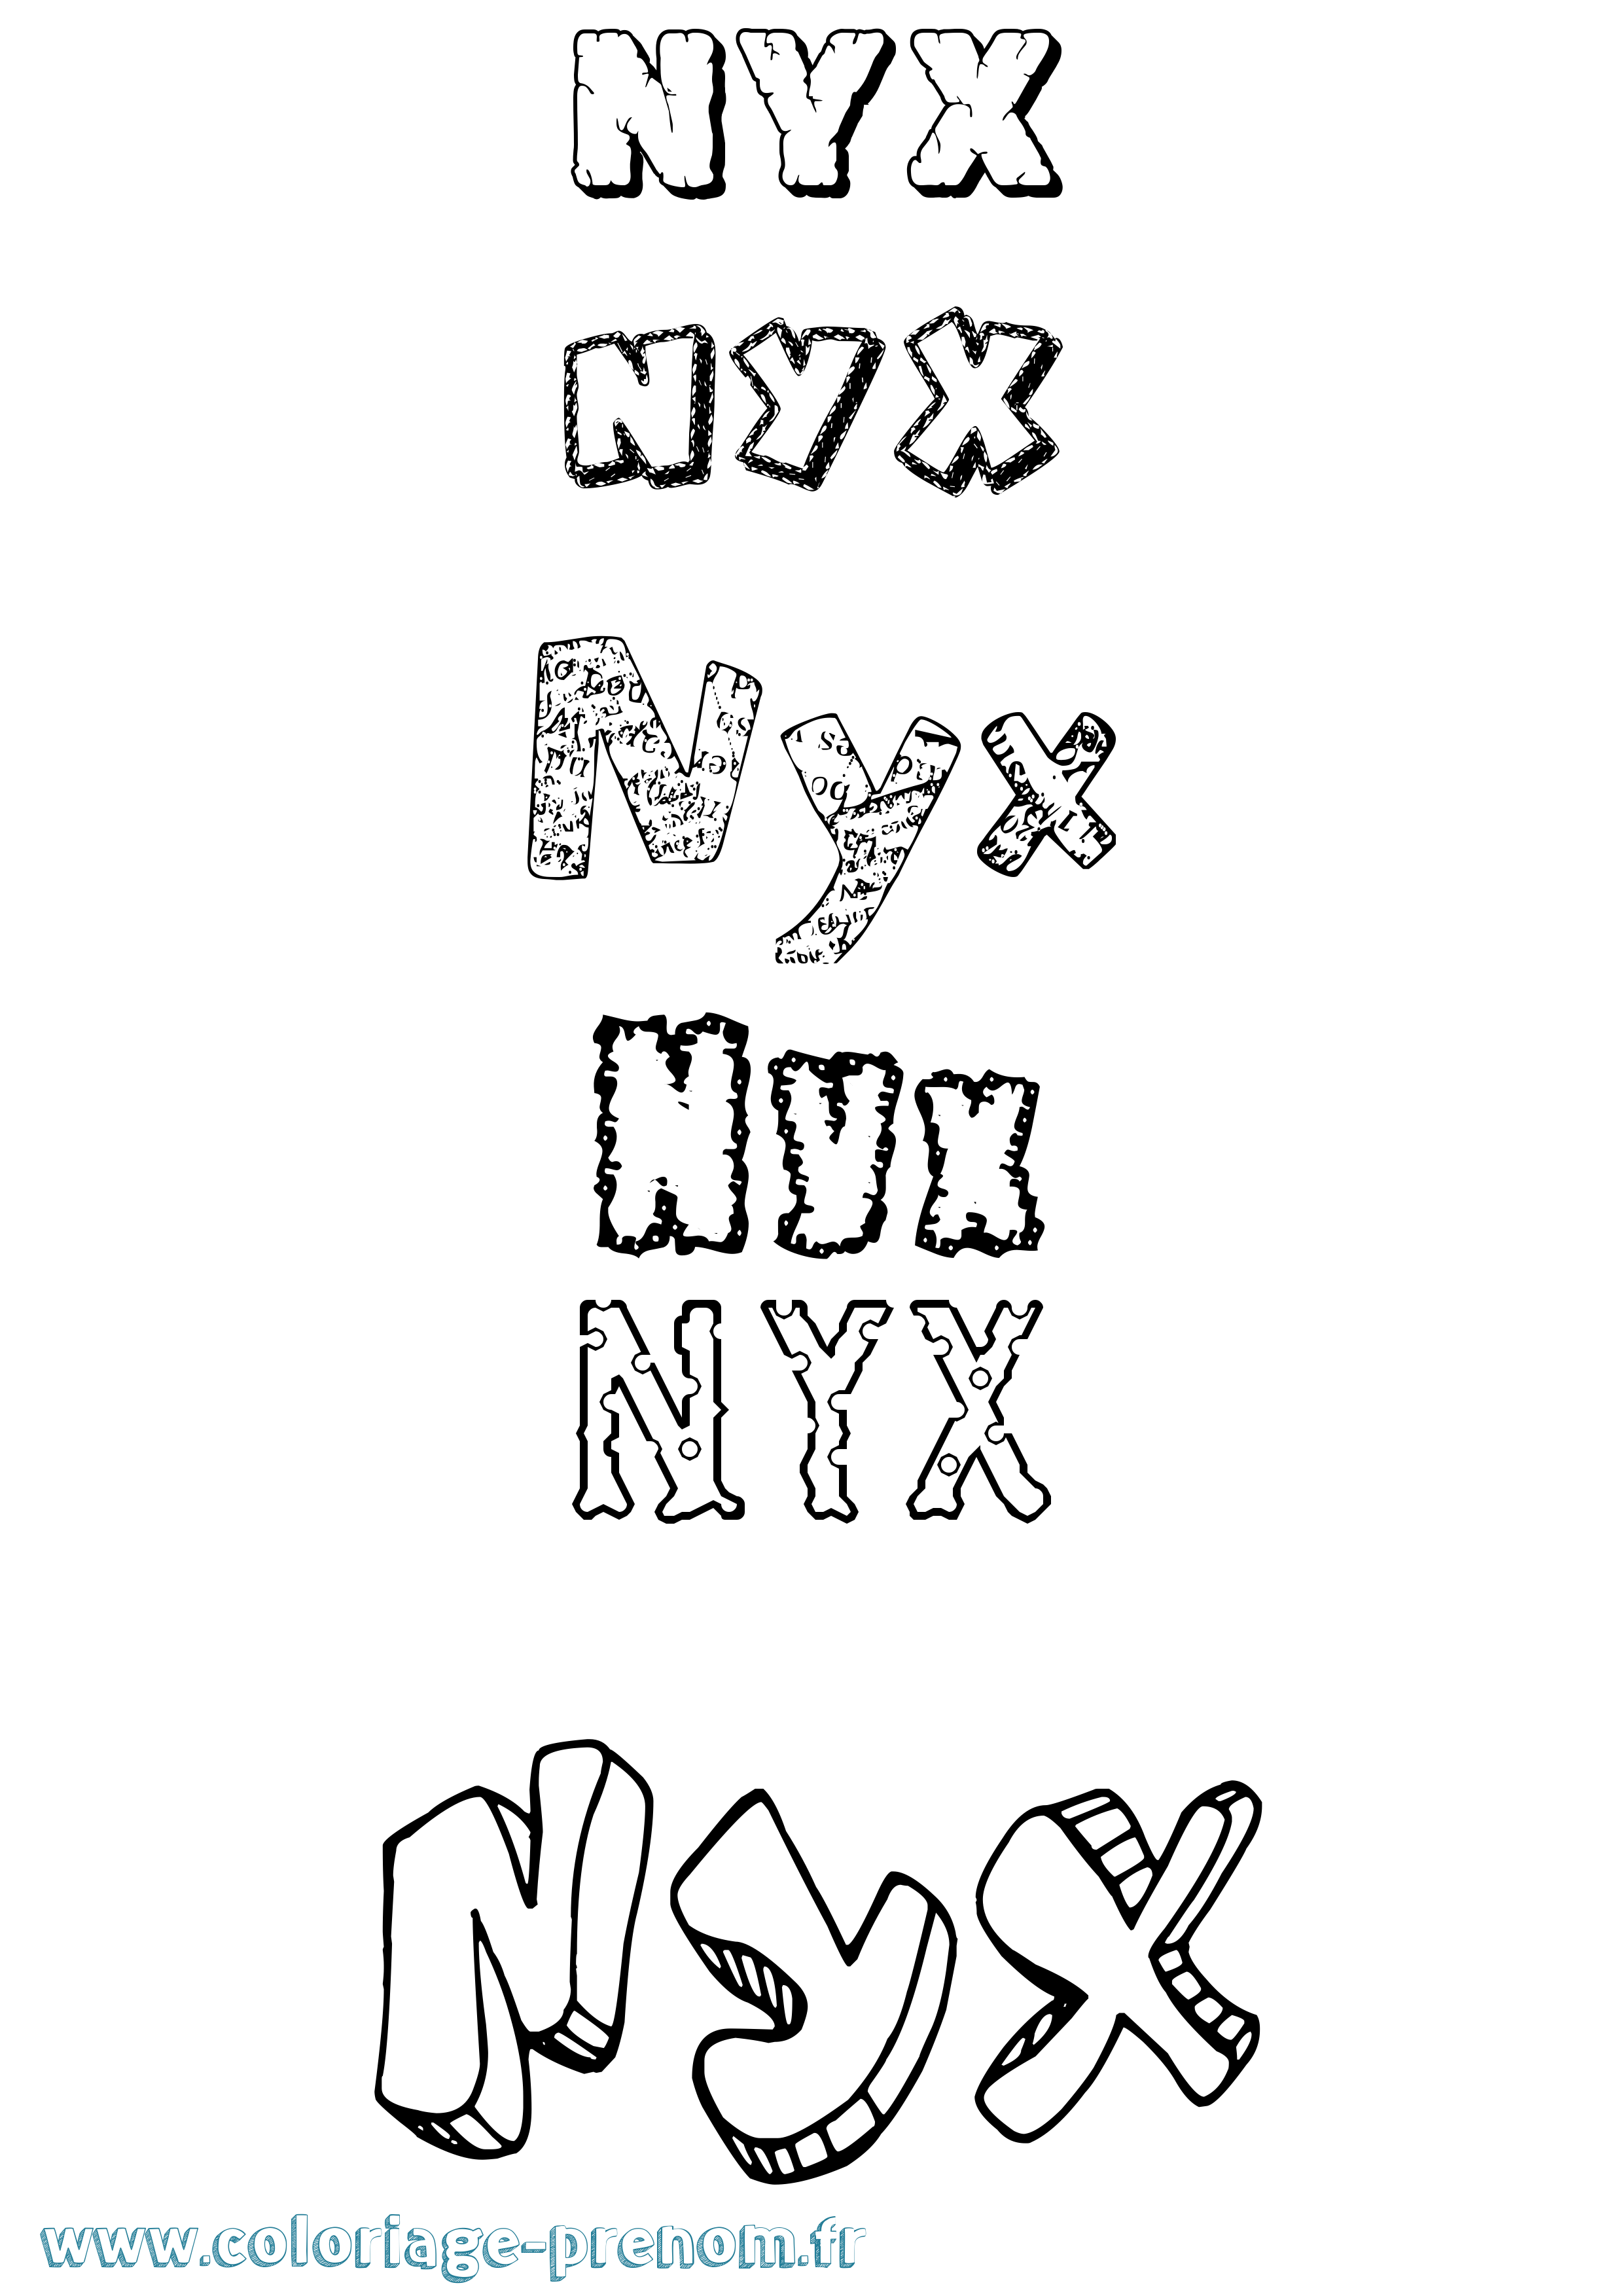 Coloriage prénom Nyx Destructuré